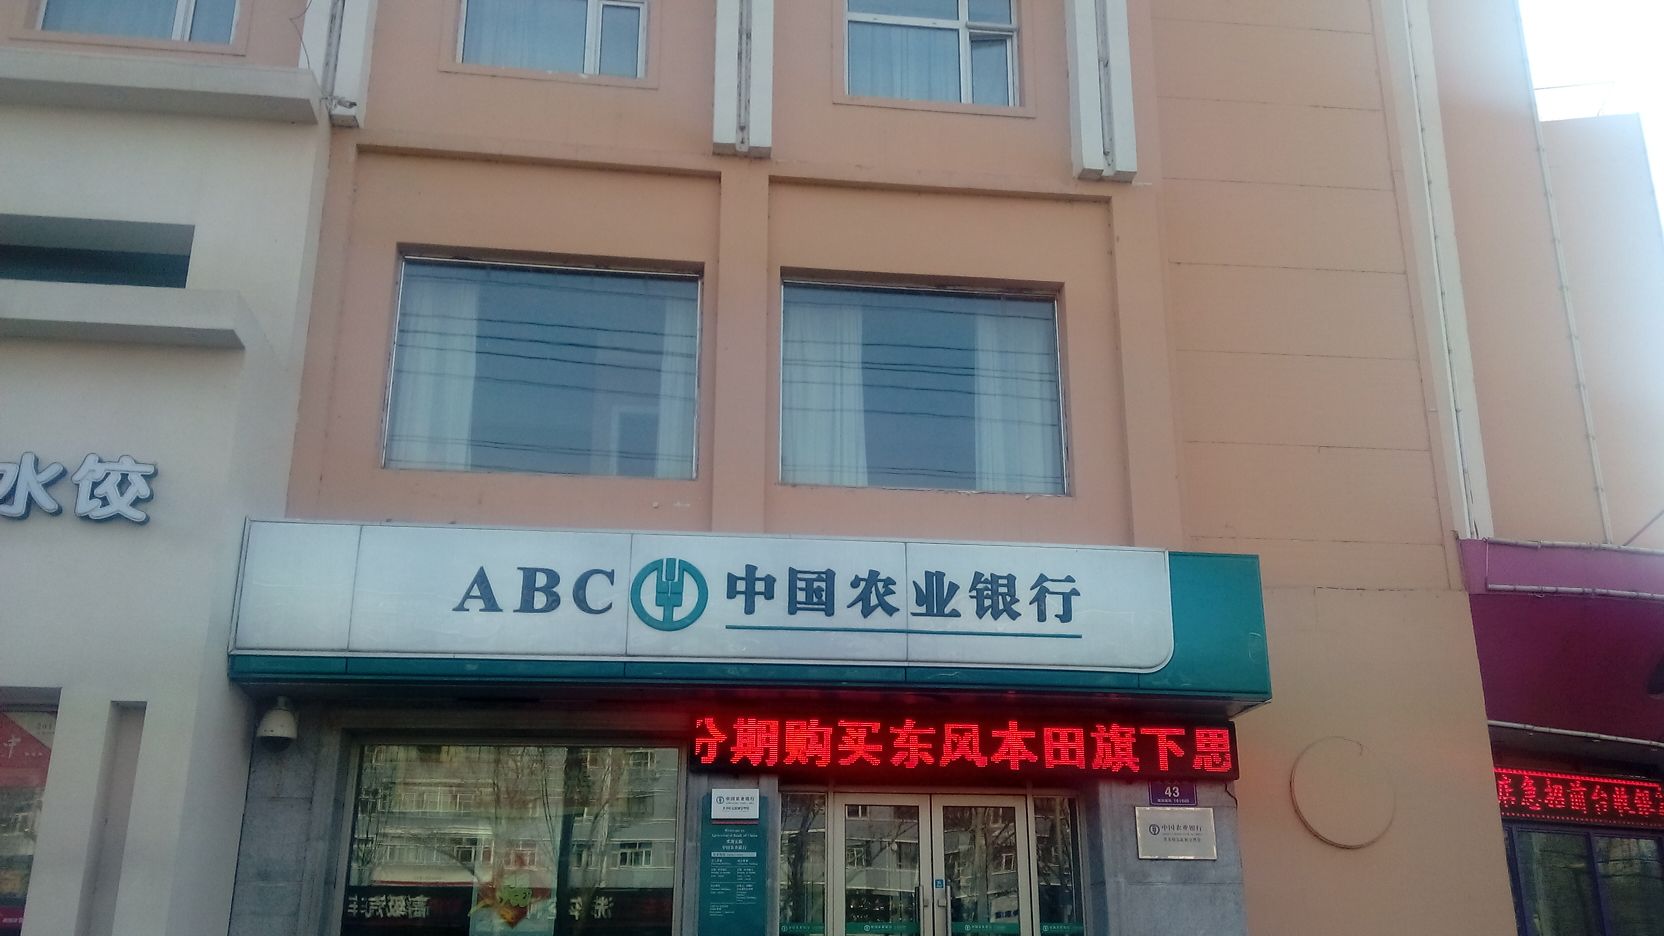 中国农业银行(齐齐哈尔新颖分理处)